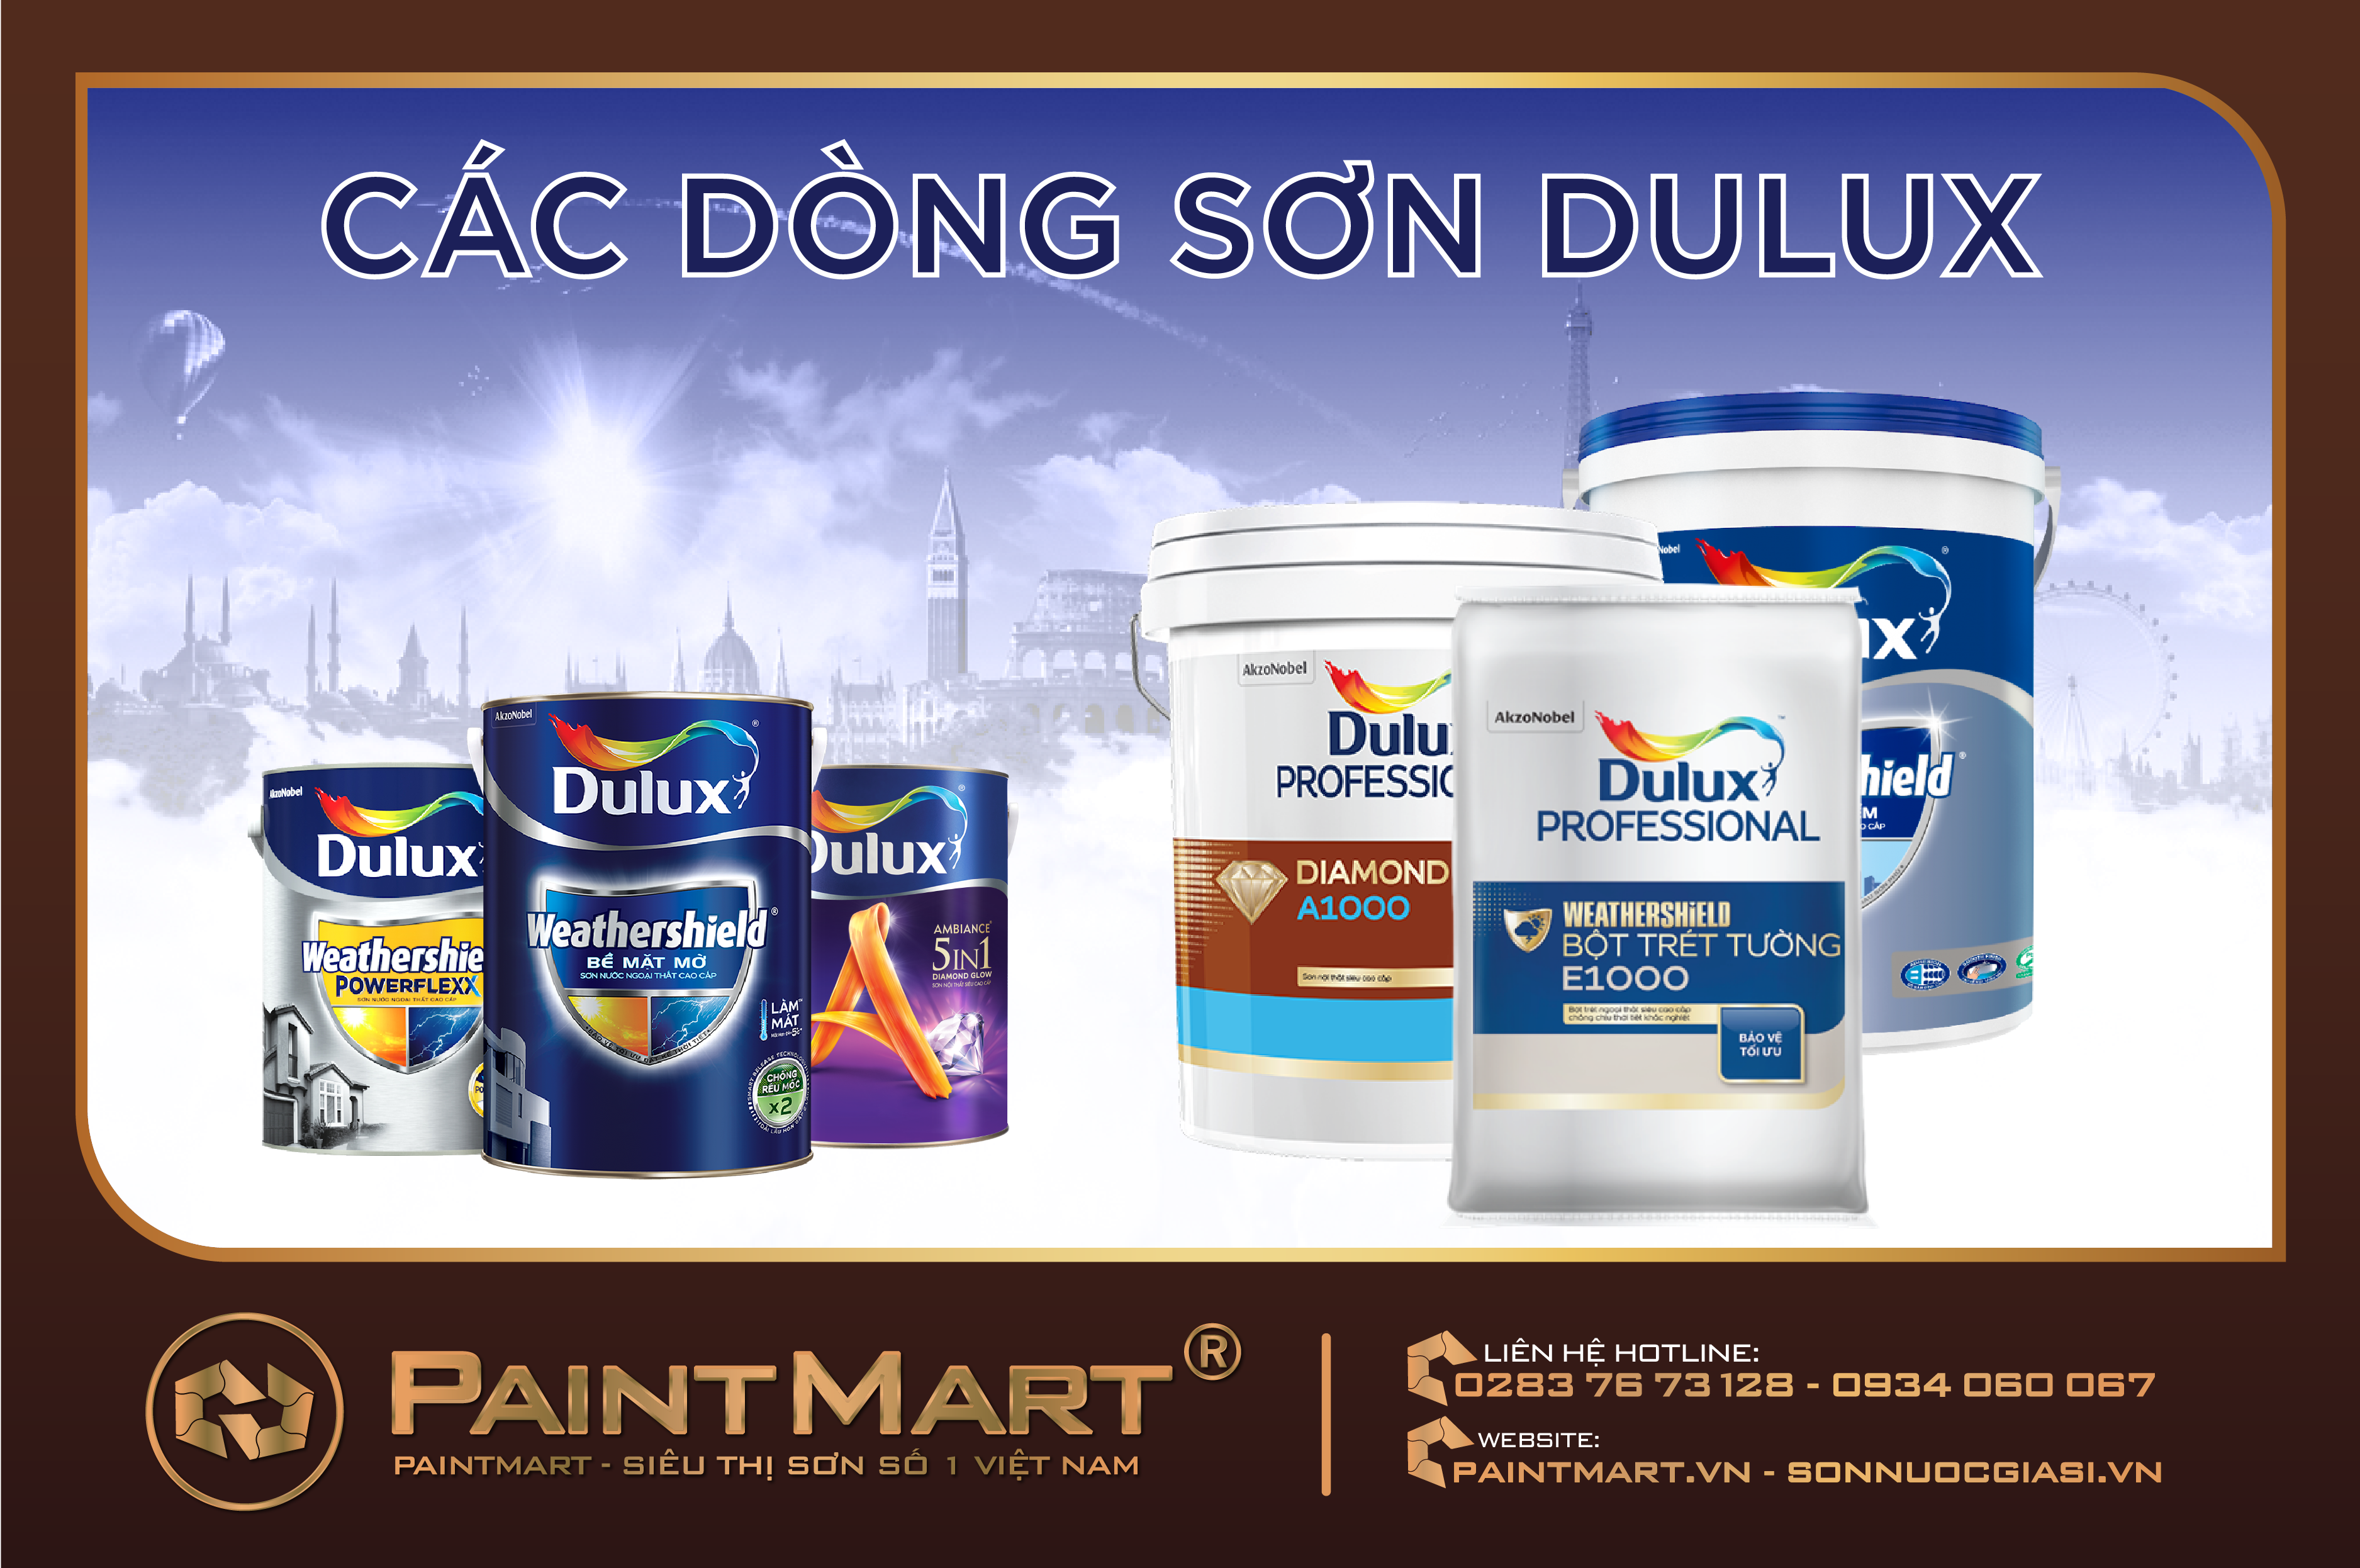 Sơn Dulux đã trở thành tên gọi quen thuộc đối với các chuyên gia trong ngành sơn. Với chất lượng cao và màu sắc tươi sáng, sơn Dulux sẽ đem đến cho bạn ngôi nhà đẹp và bền đẹp như mong đợi.